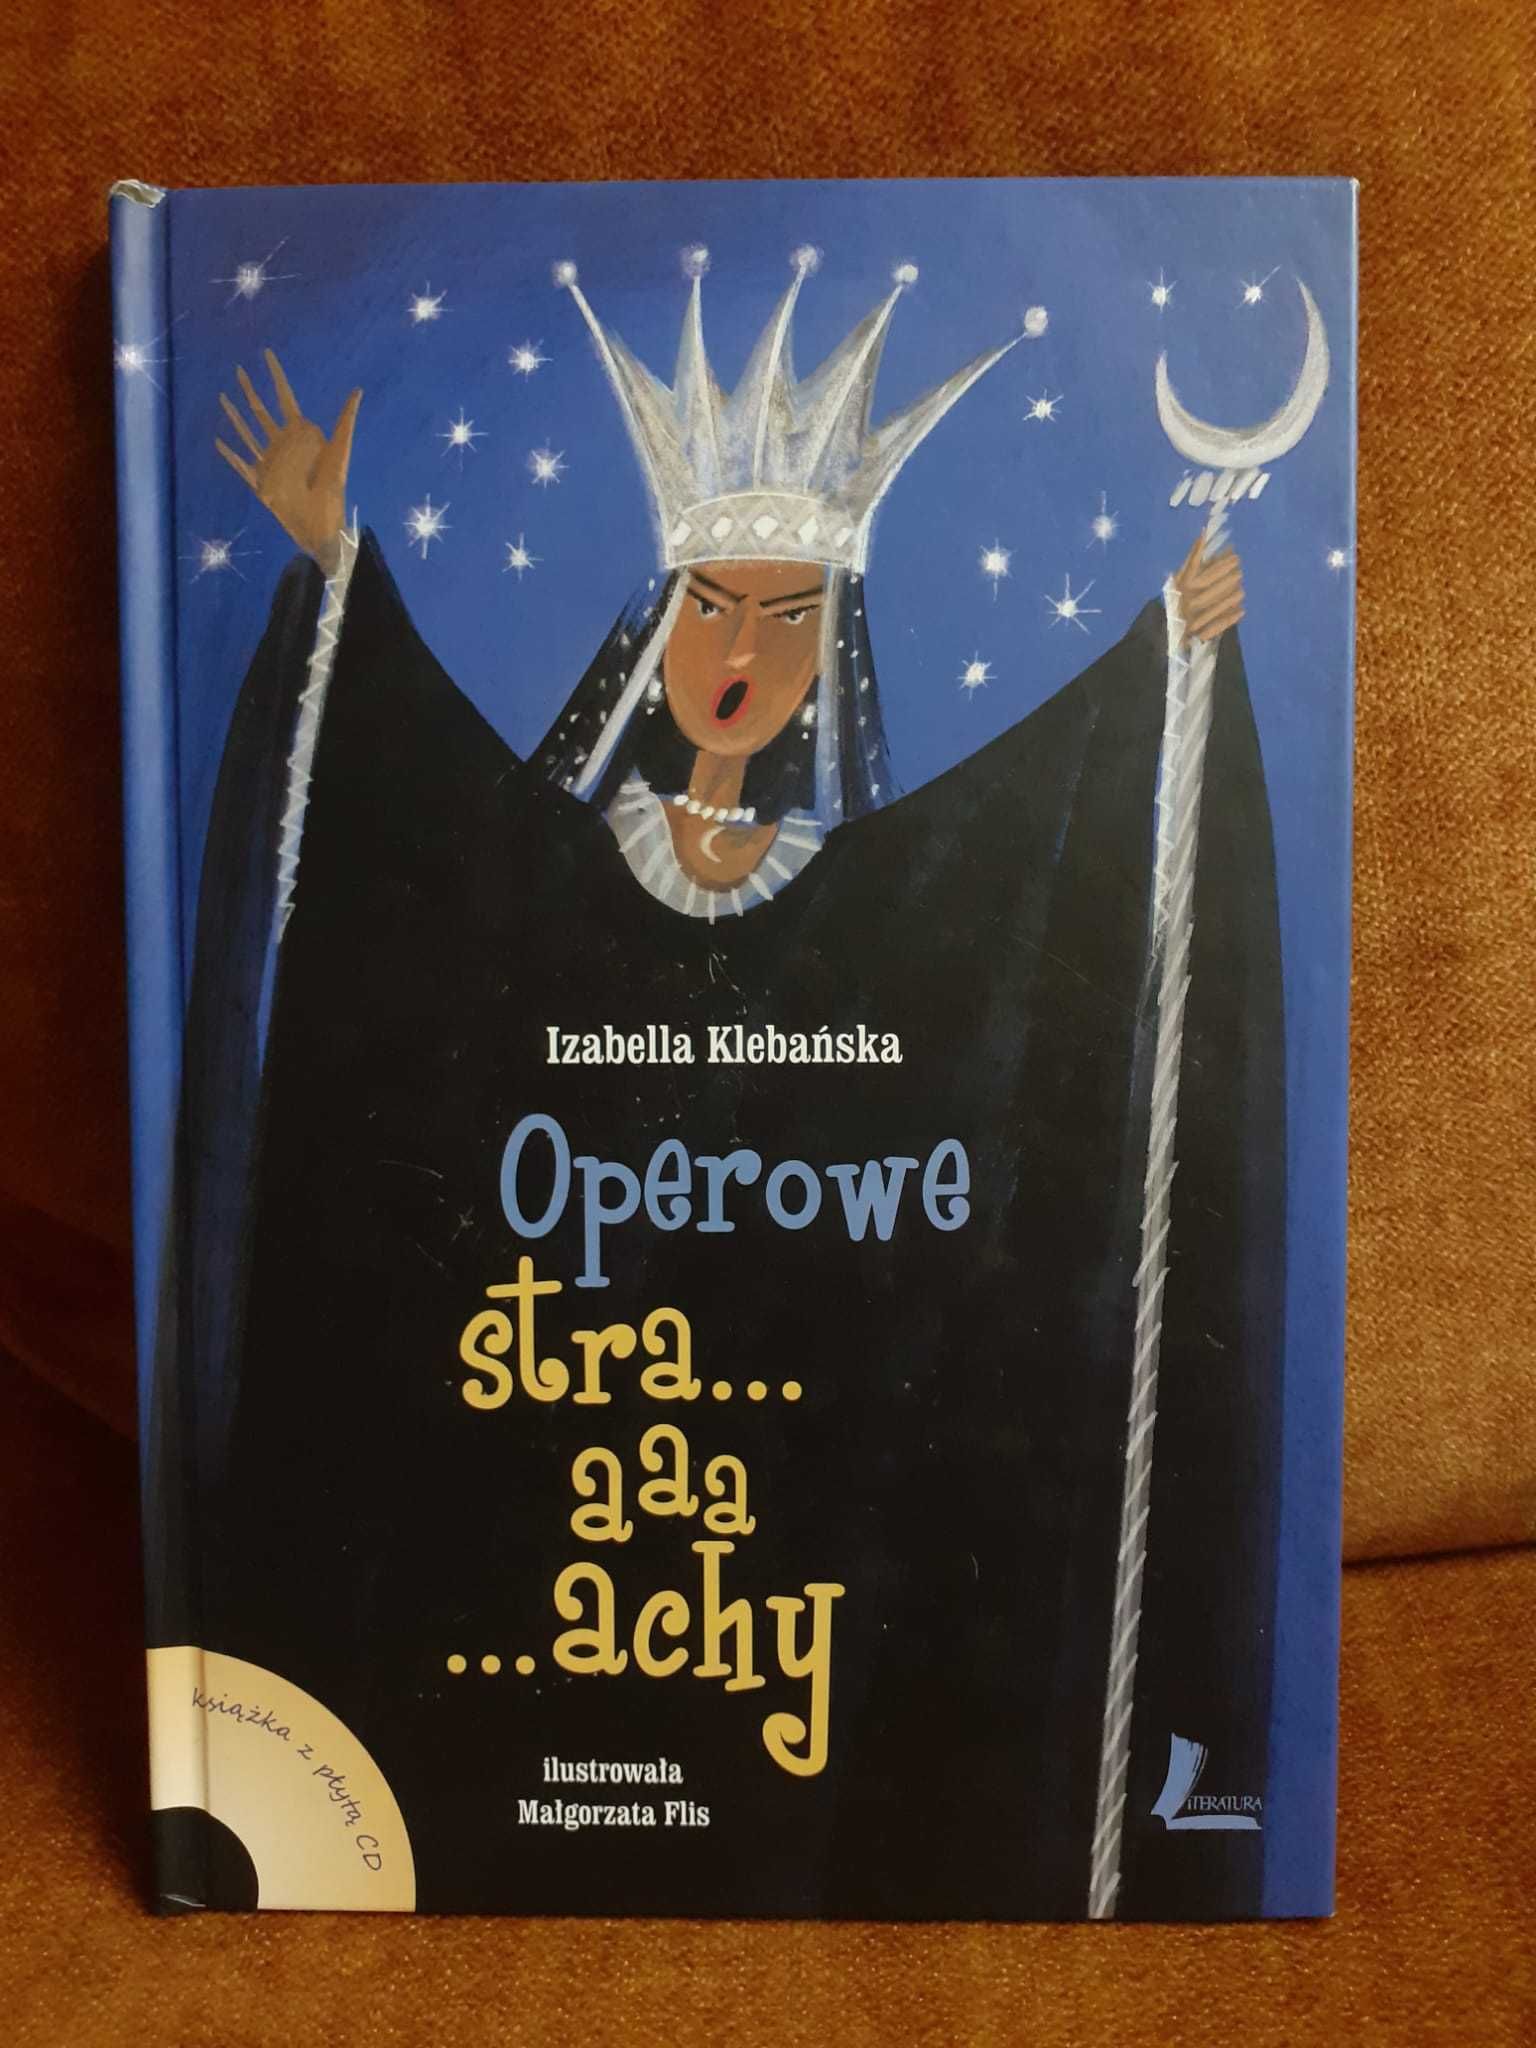 Książka Operowe Straaaachy - Izabella Klebańska